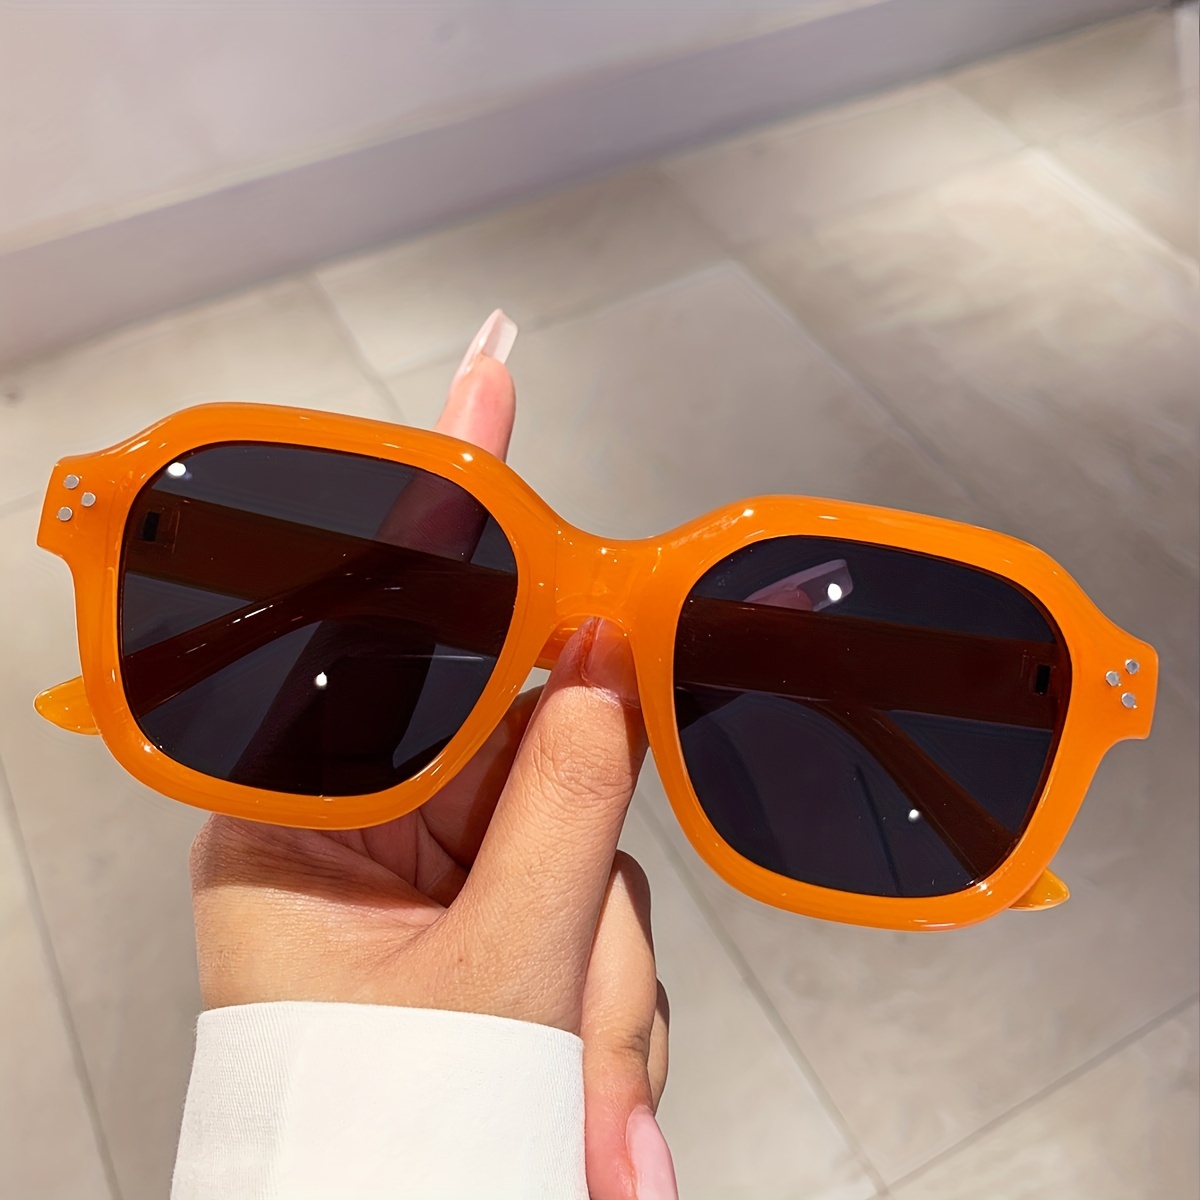 Las mejores ofertas en Gafas de sol para hombres Louis Vuitton hombres